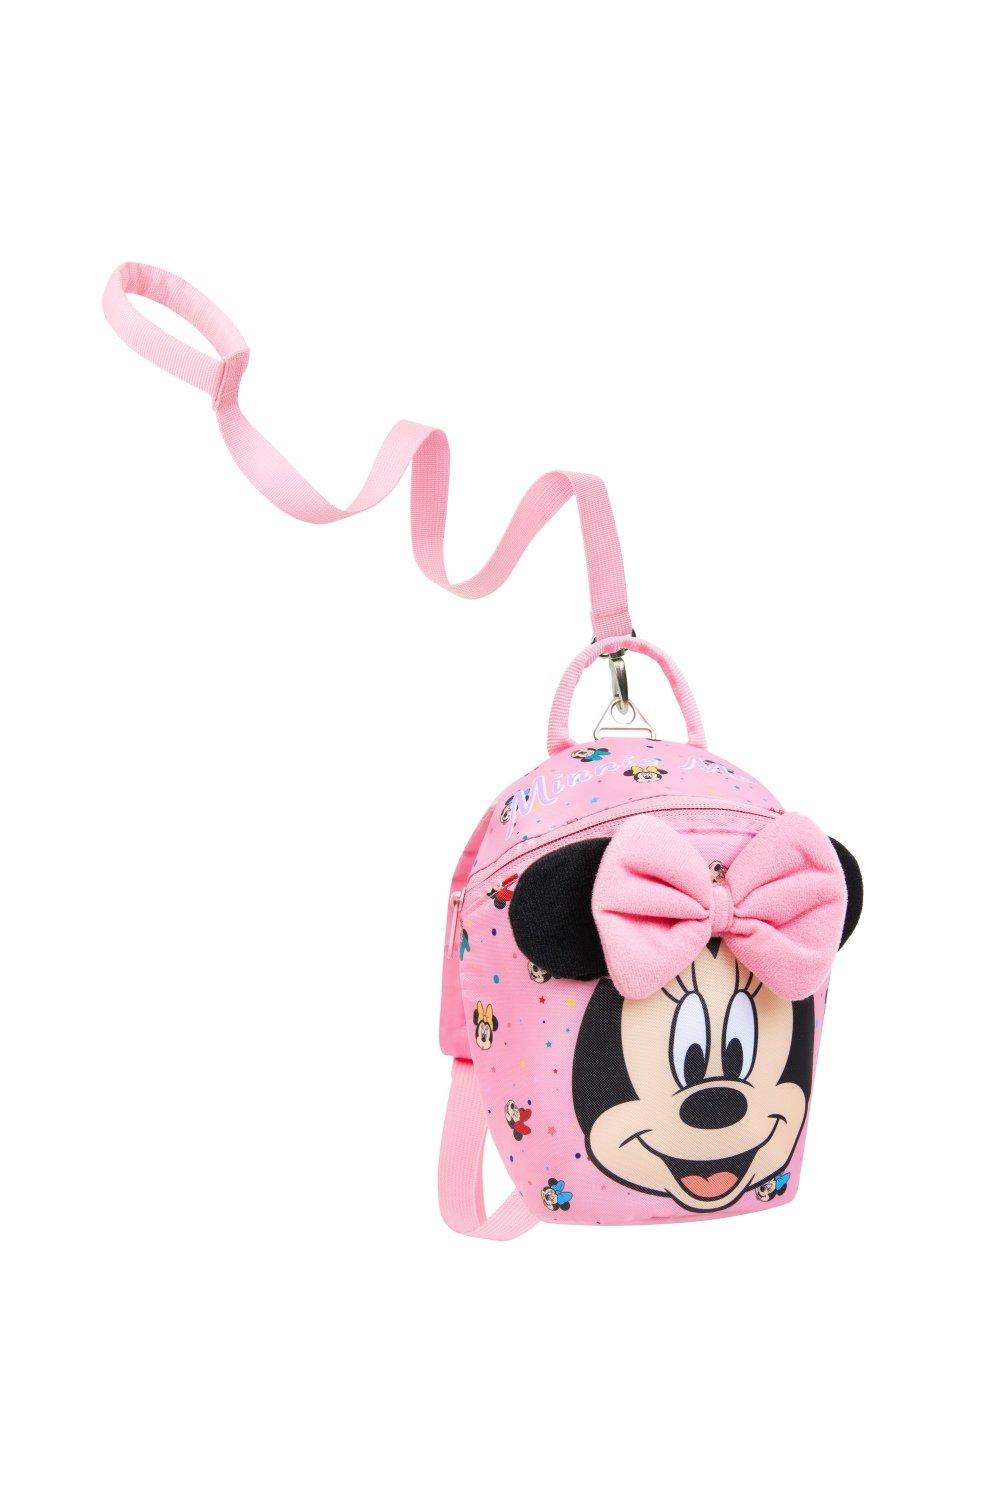 Рюкзак для малышей с поводьями Minnie, розовый рюкзак минни маус mickey mouse желтый 1